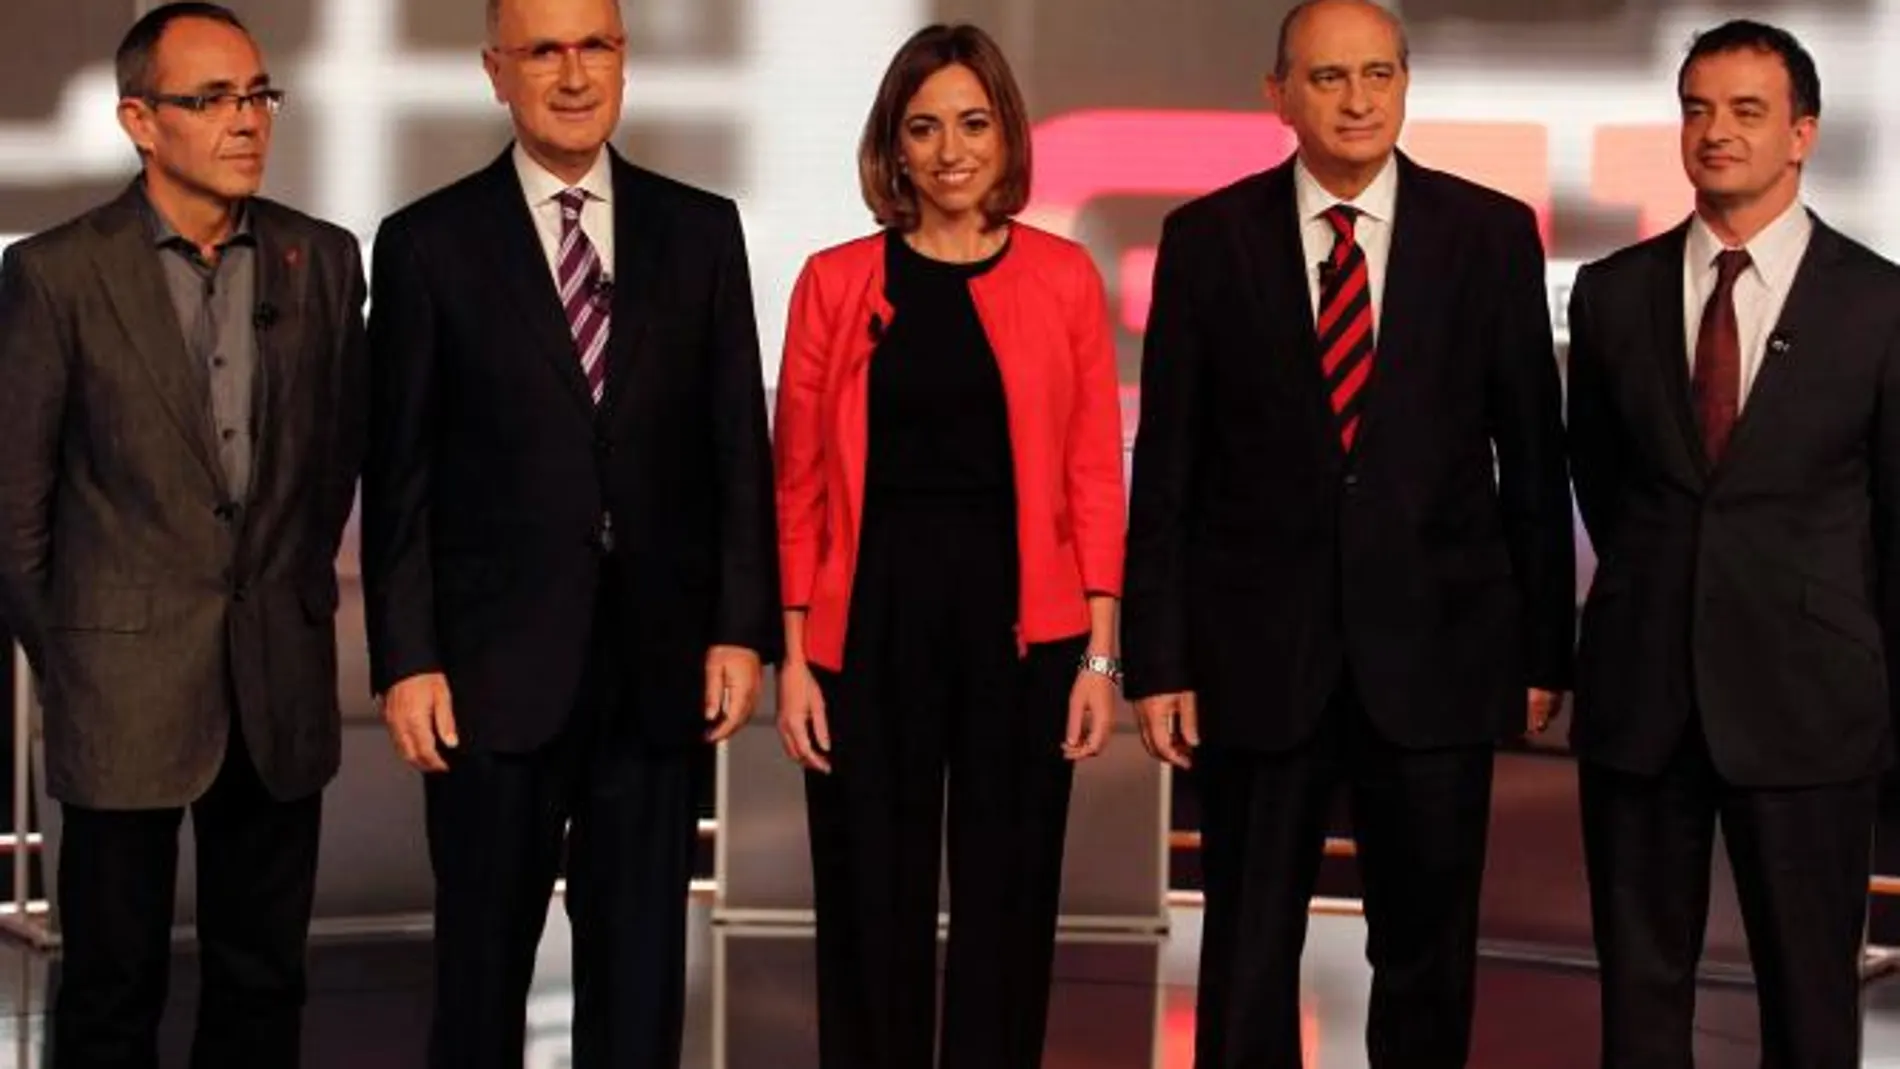 Bombardeo de críticas al PSC en el debate a cinco de TV3